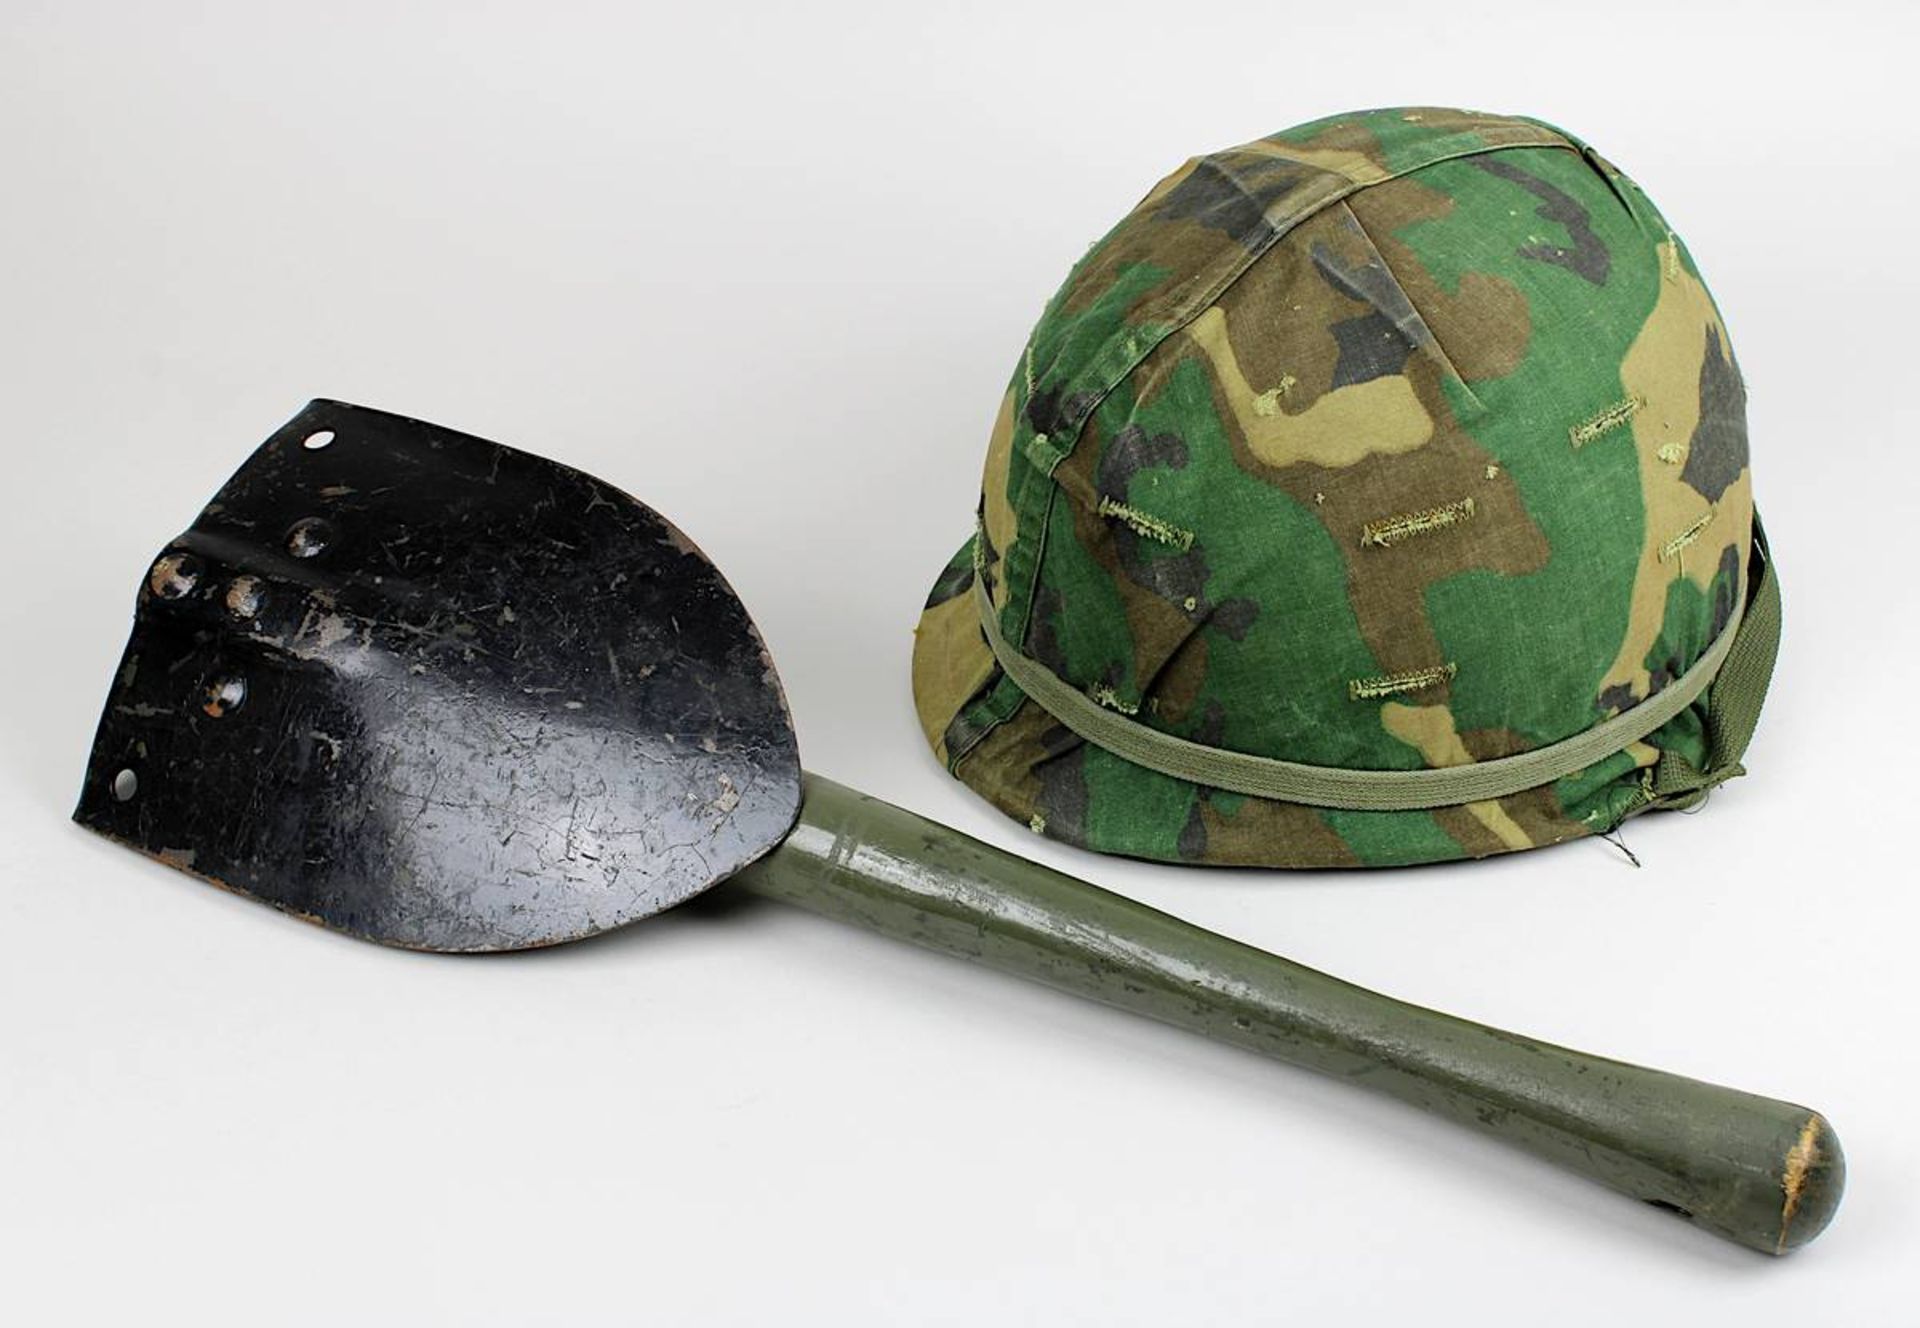 US-Armee-Helm und Klappspaten, um 1966, aus dem Vietnam-Krieg, Helm mit Camouflage-Cover und